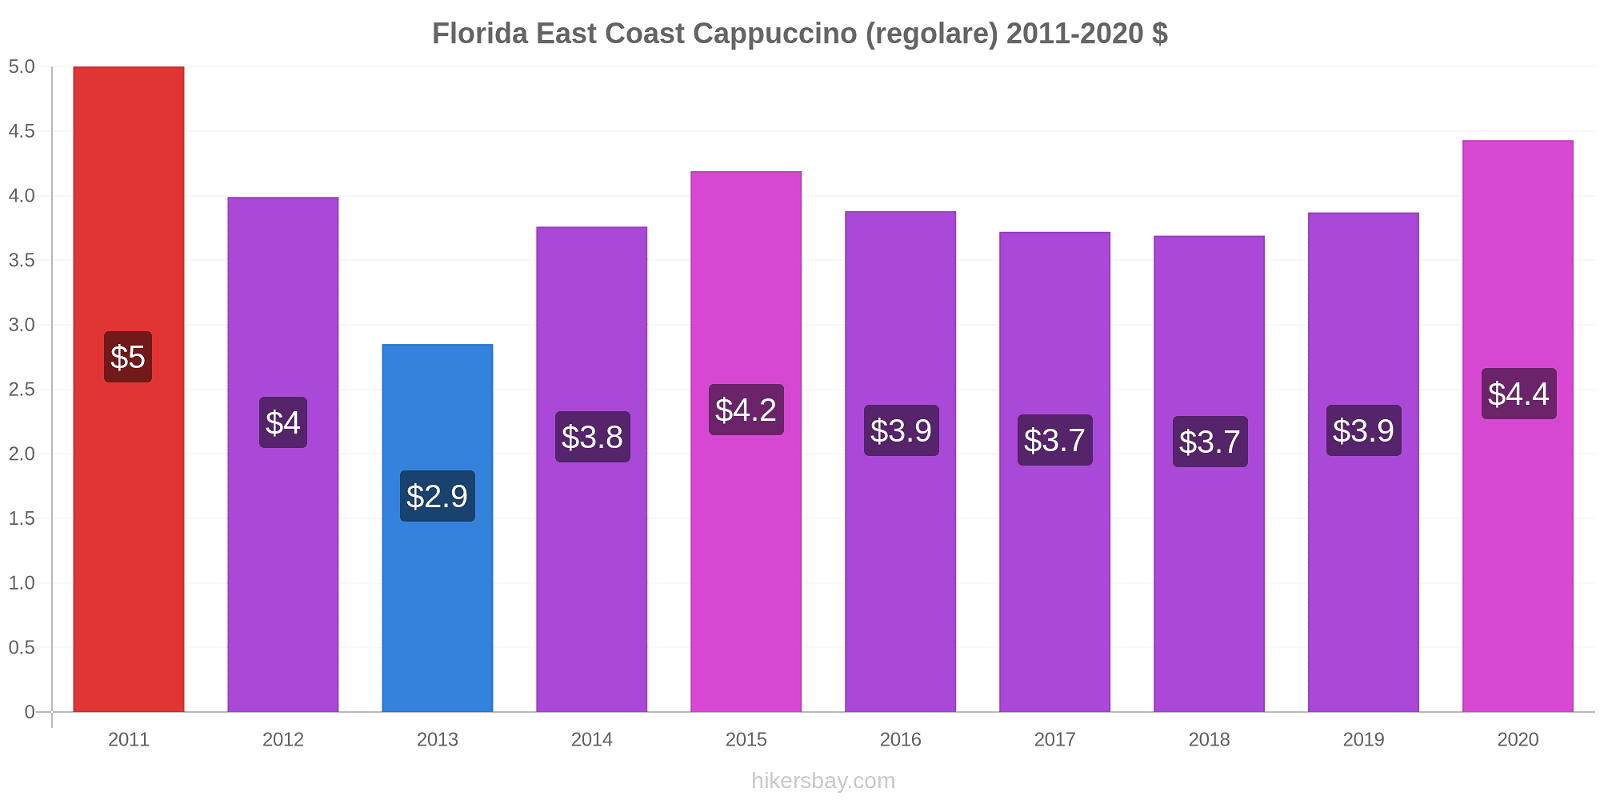 Florida East Coast variazioni di prezzo Cappuccino (normale) hikersbay.com